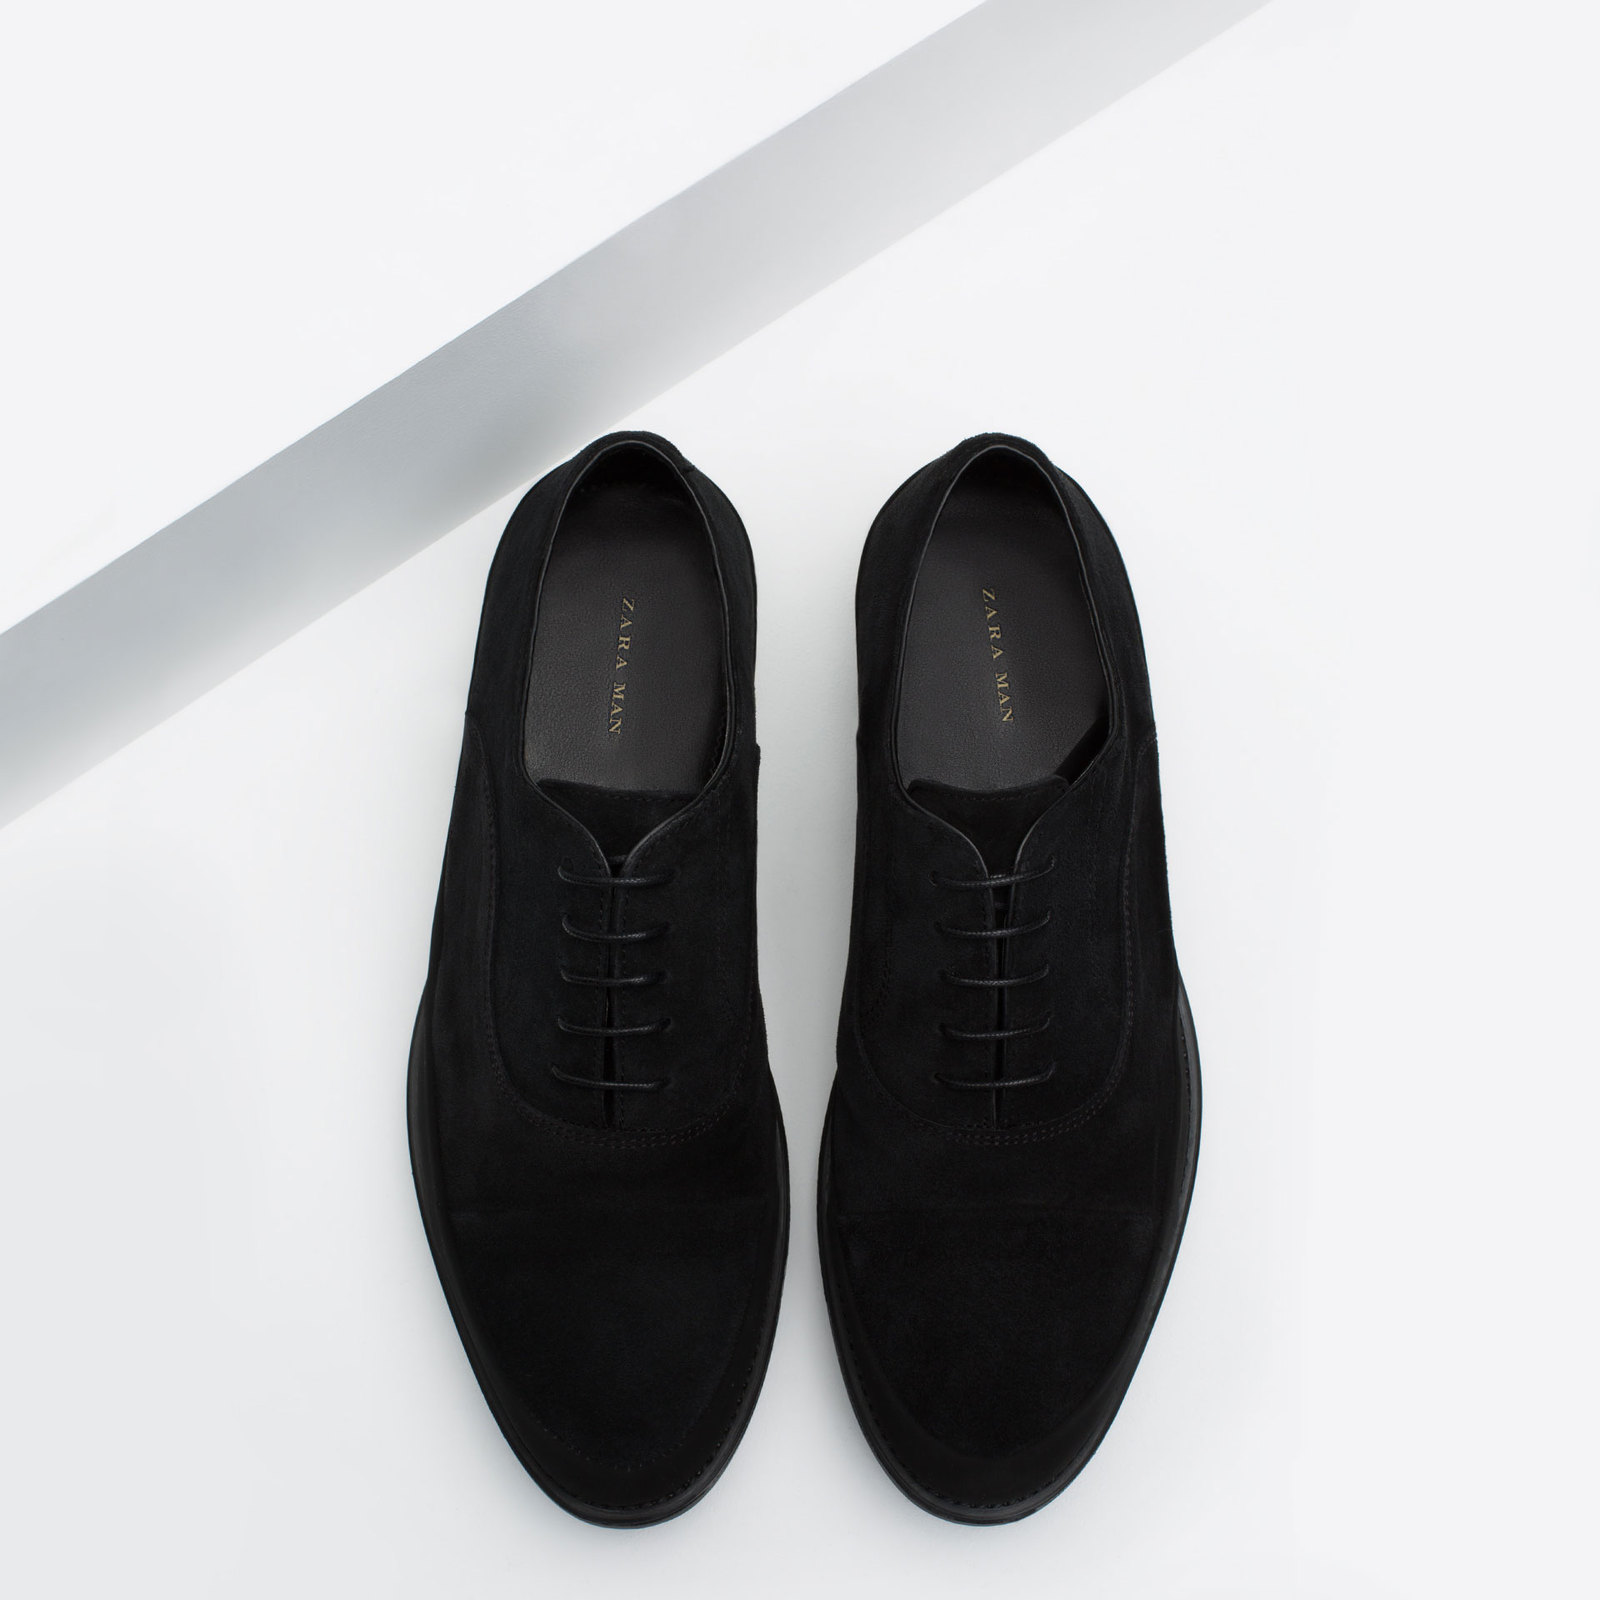 Zara hasított bőr fekete oxford cipő 2015.10.16 #89868 fotója